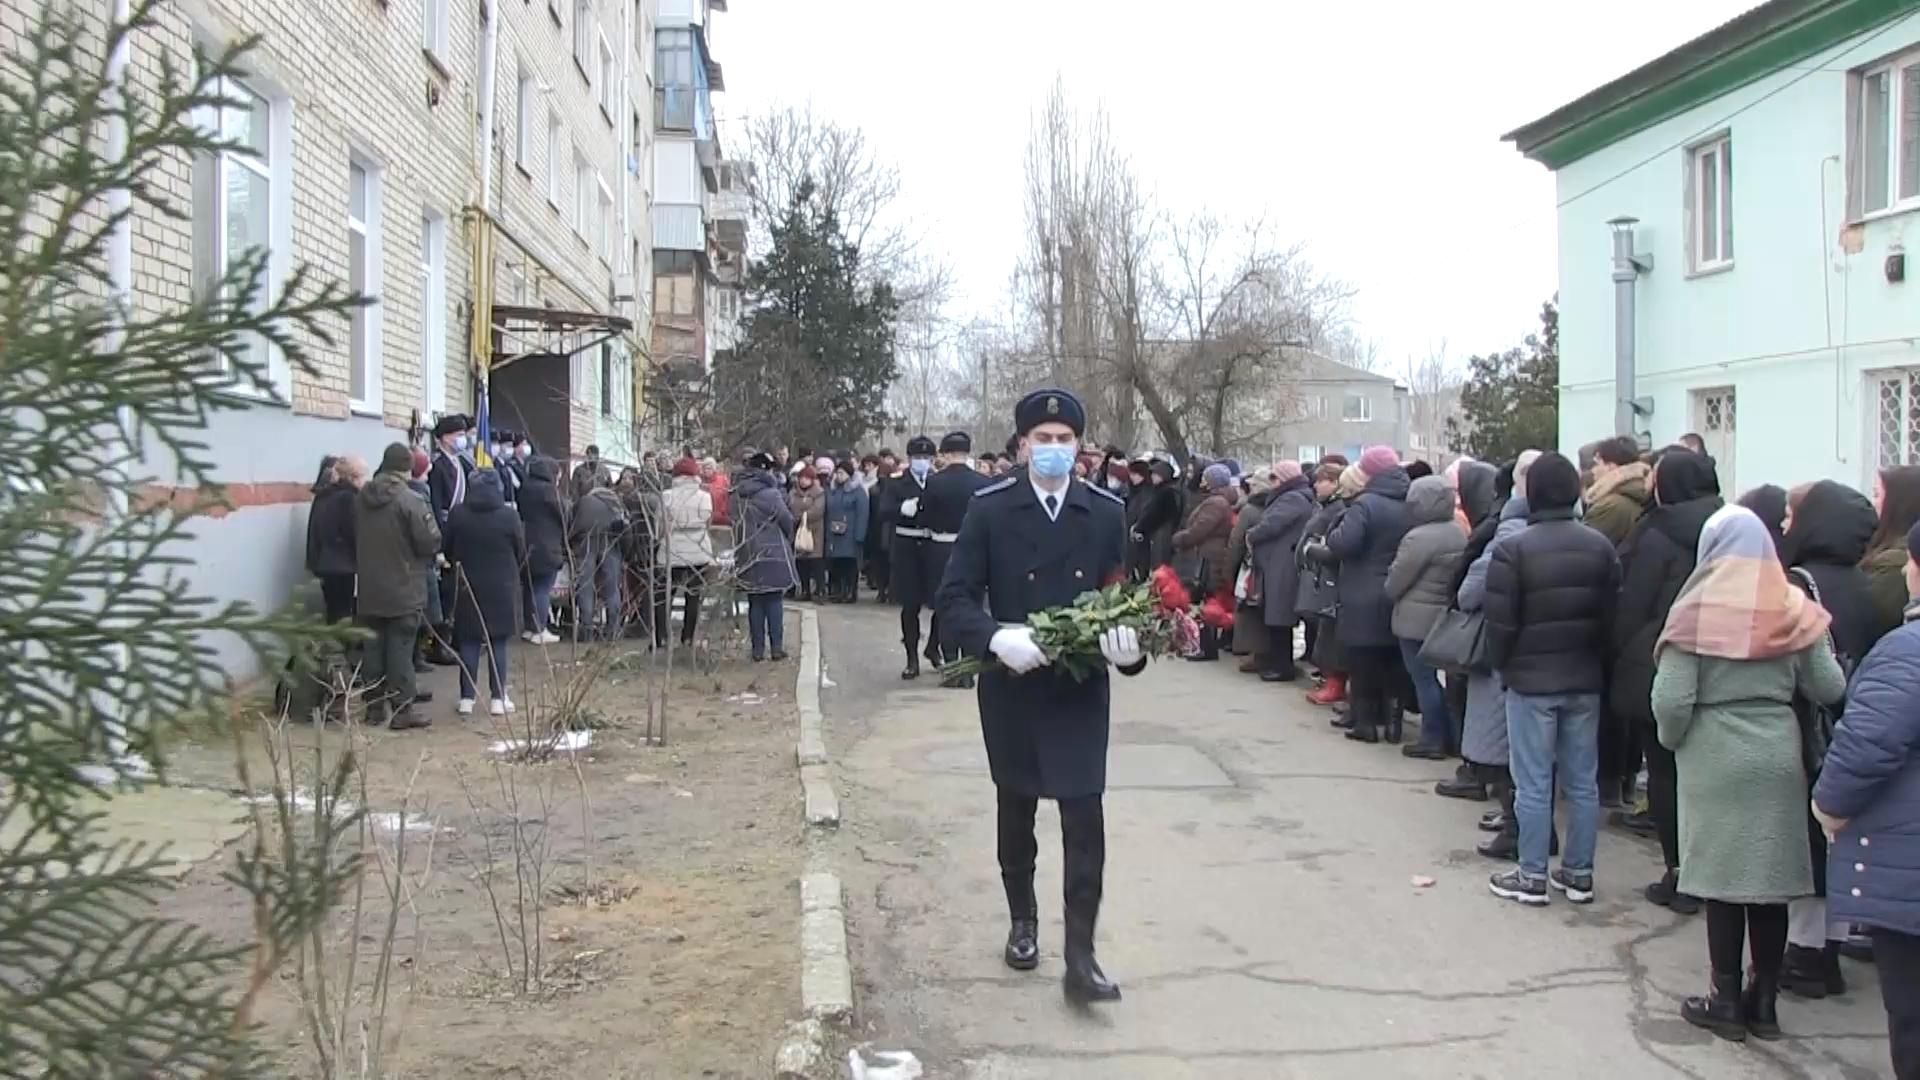 "Був хорошою людиною": близькі поділились спогадами про вбитих у Дніпрі нацгвардійців - Україна новини - 24 Канал